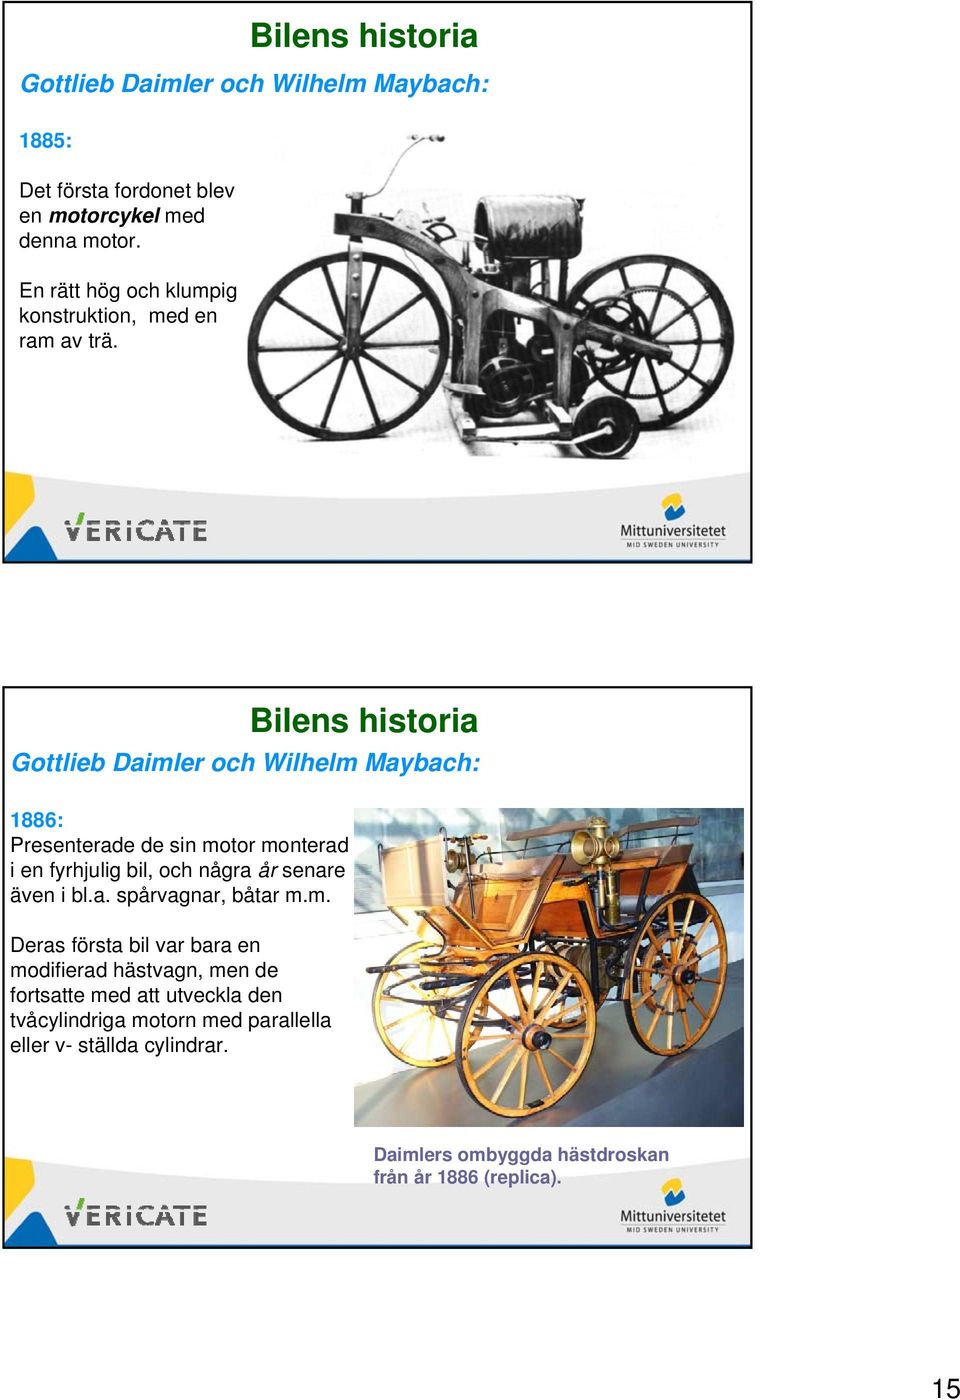 Gottlieb Daimler och Wilhelm Maybach: 1886: Presenterade de sin motor monterad i en fyrhjulig bil, och några år senare även i bl.